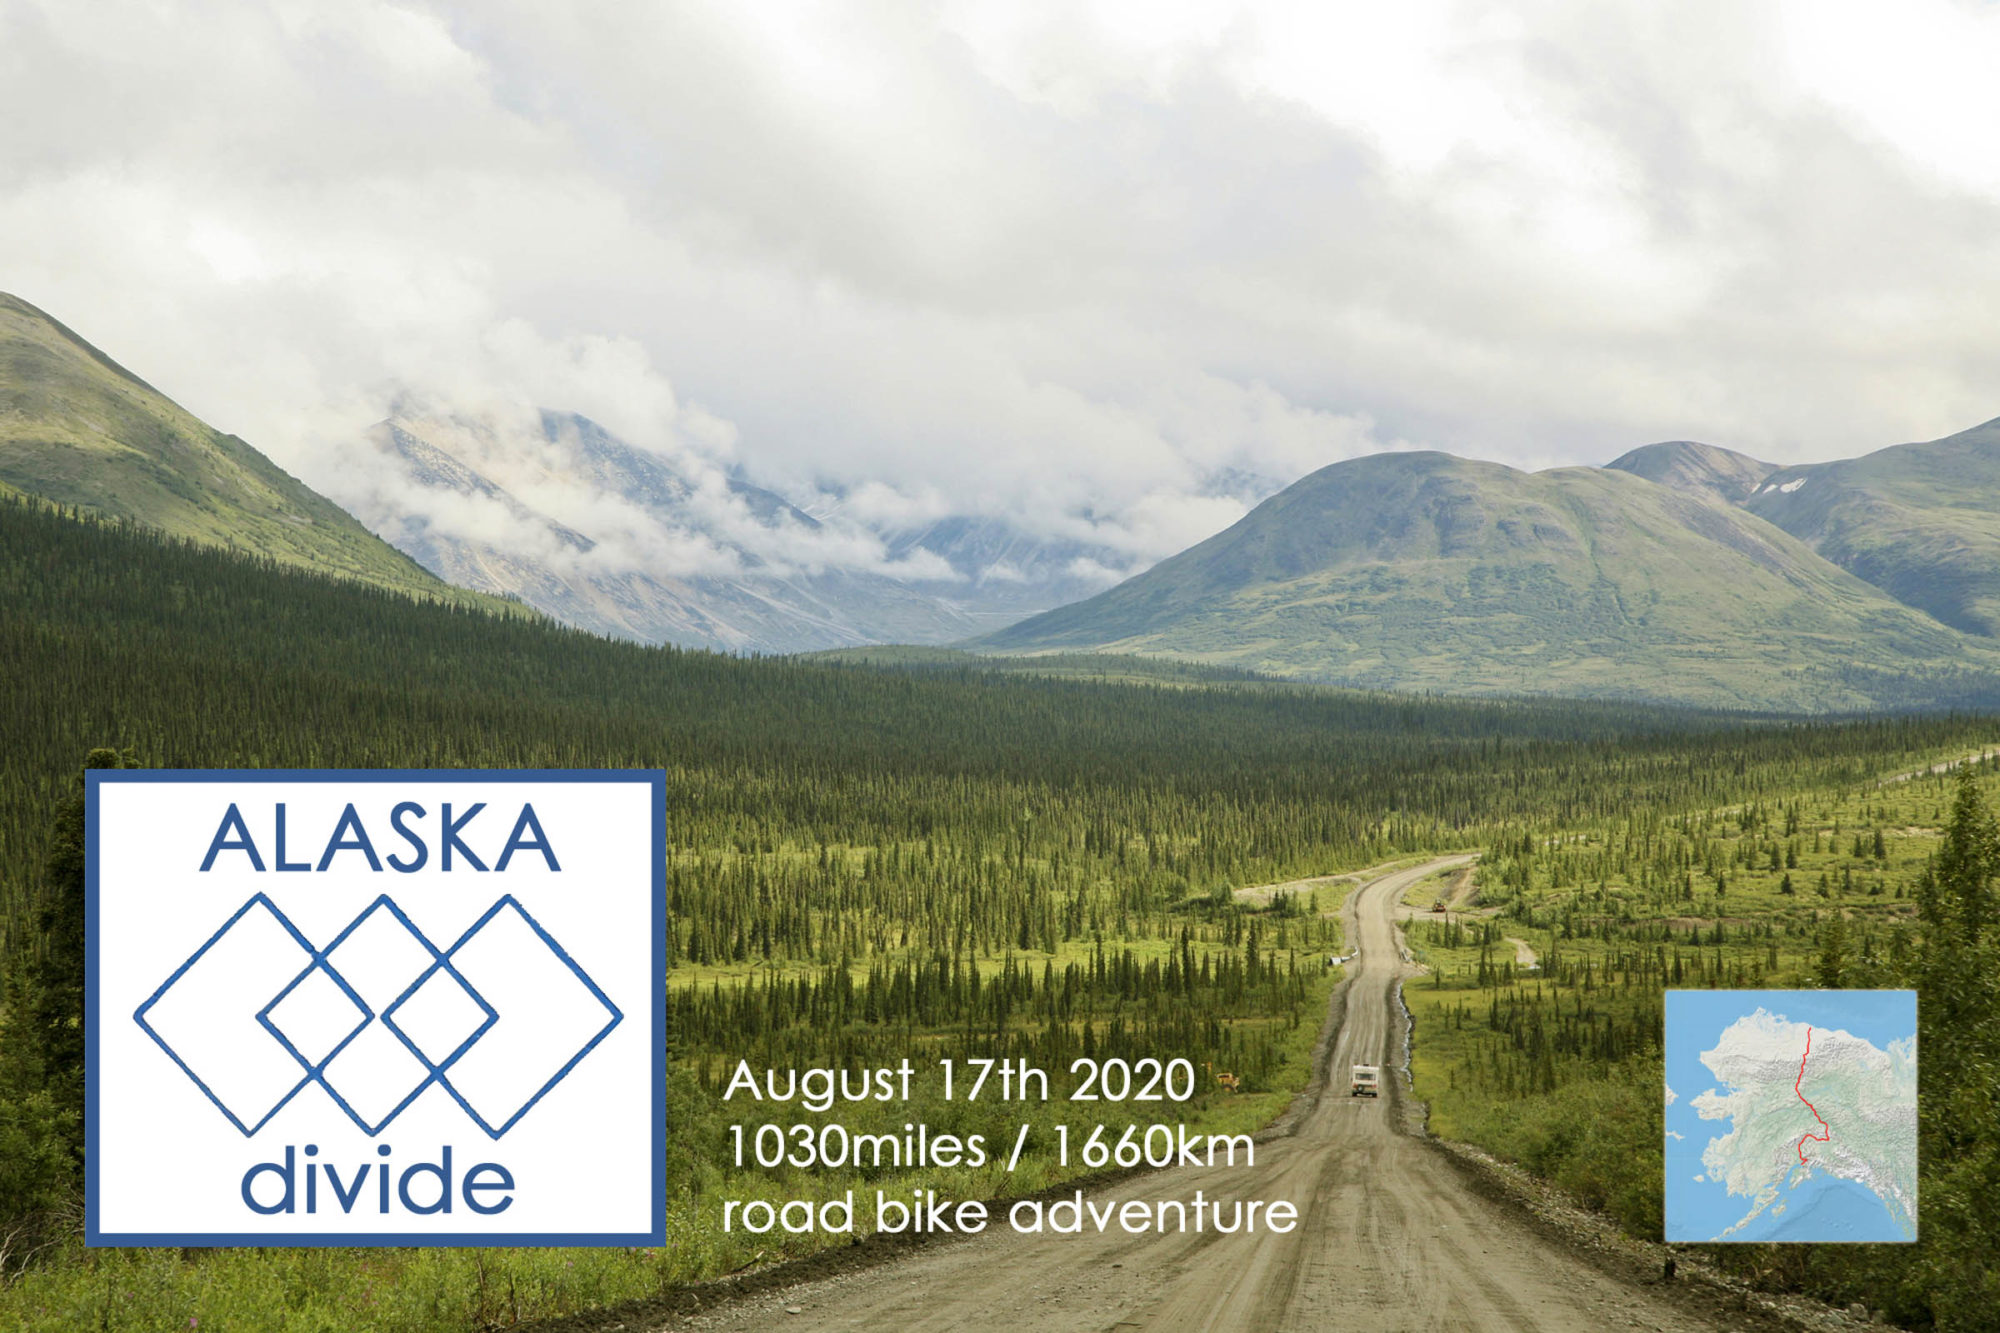 Alaska Divide 2020